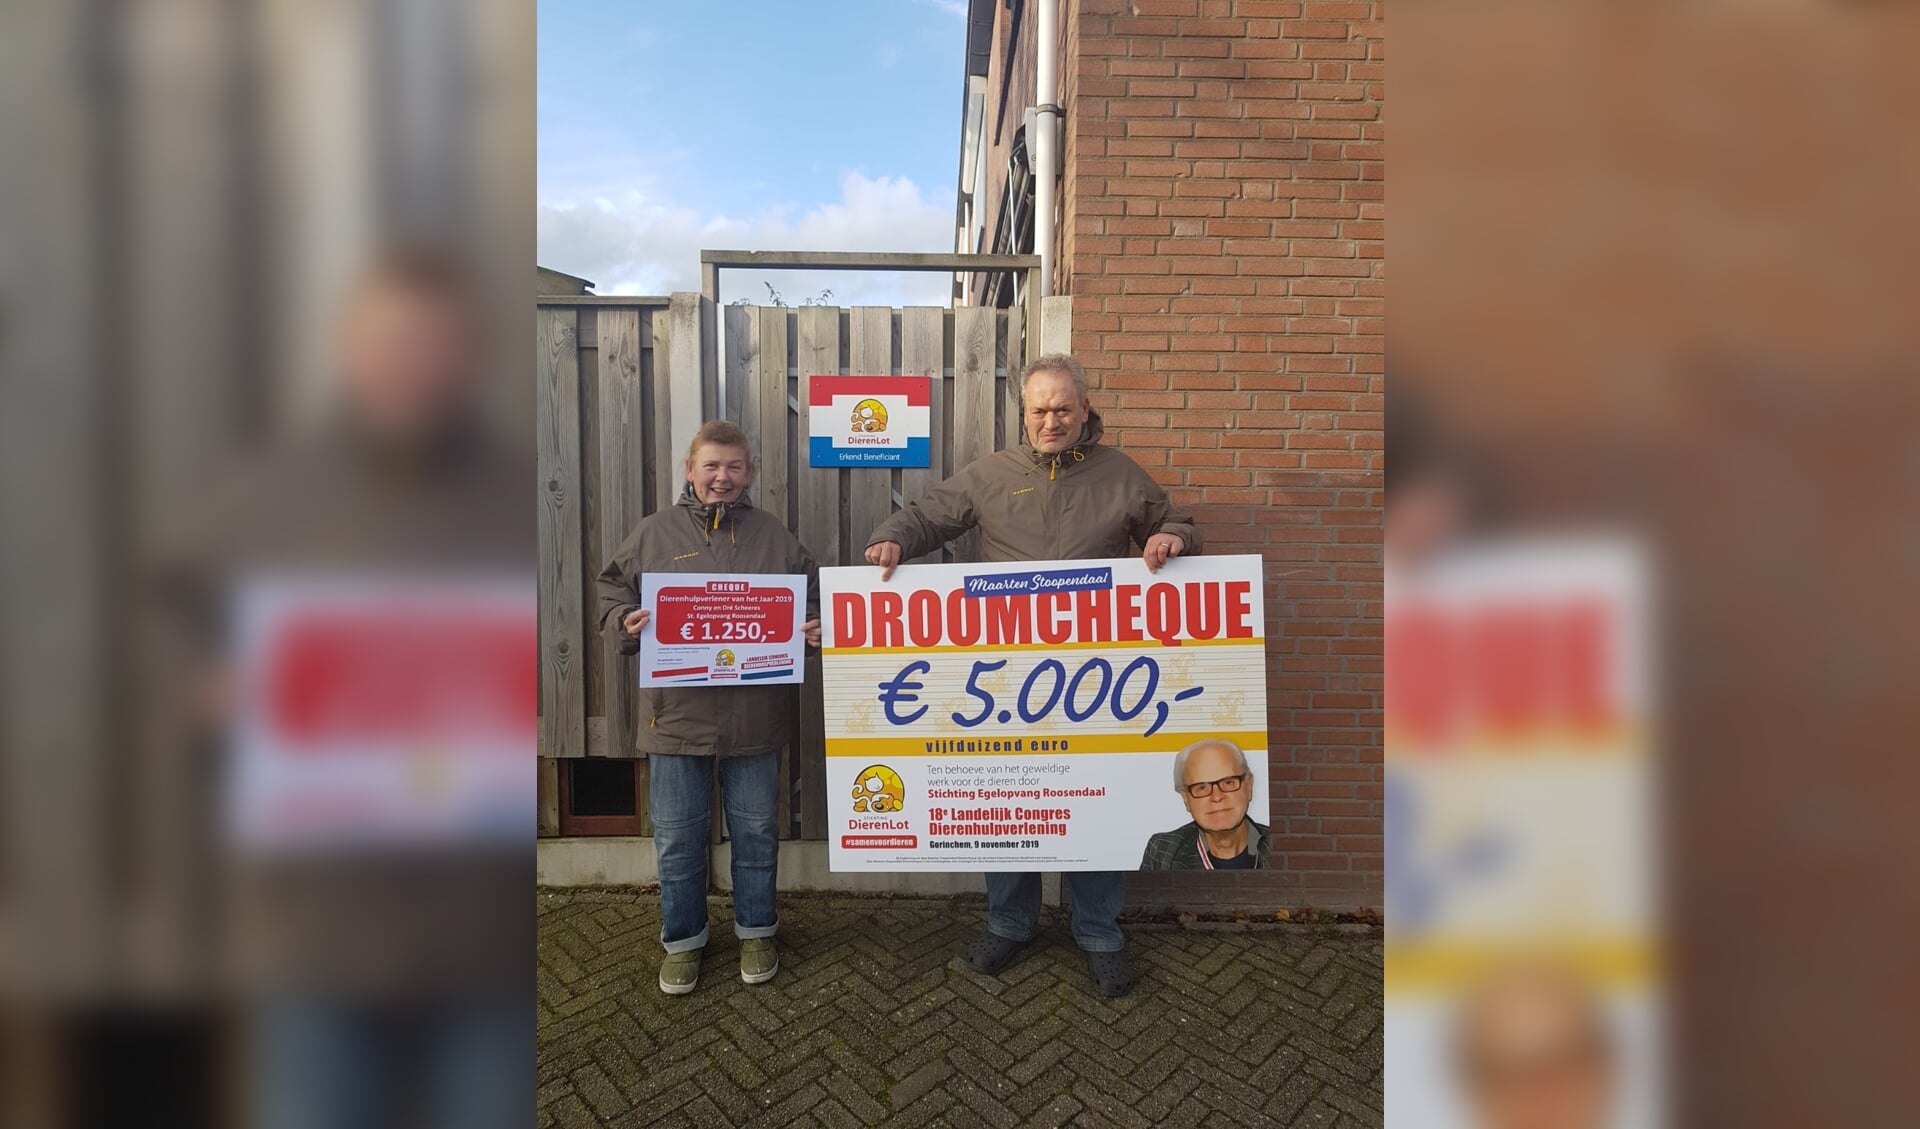 De beheerders Dré en Conny Scheeres, oprichters van Stichting Egelopvang Roosendaal, met de prijzen die ze hebben mogen ontvangen.